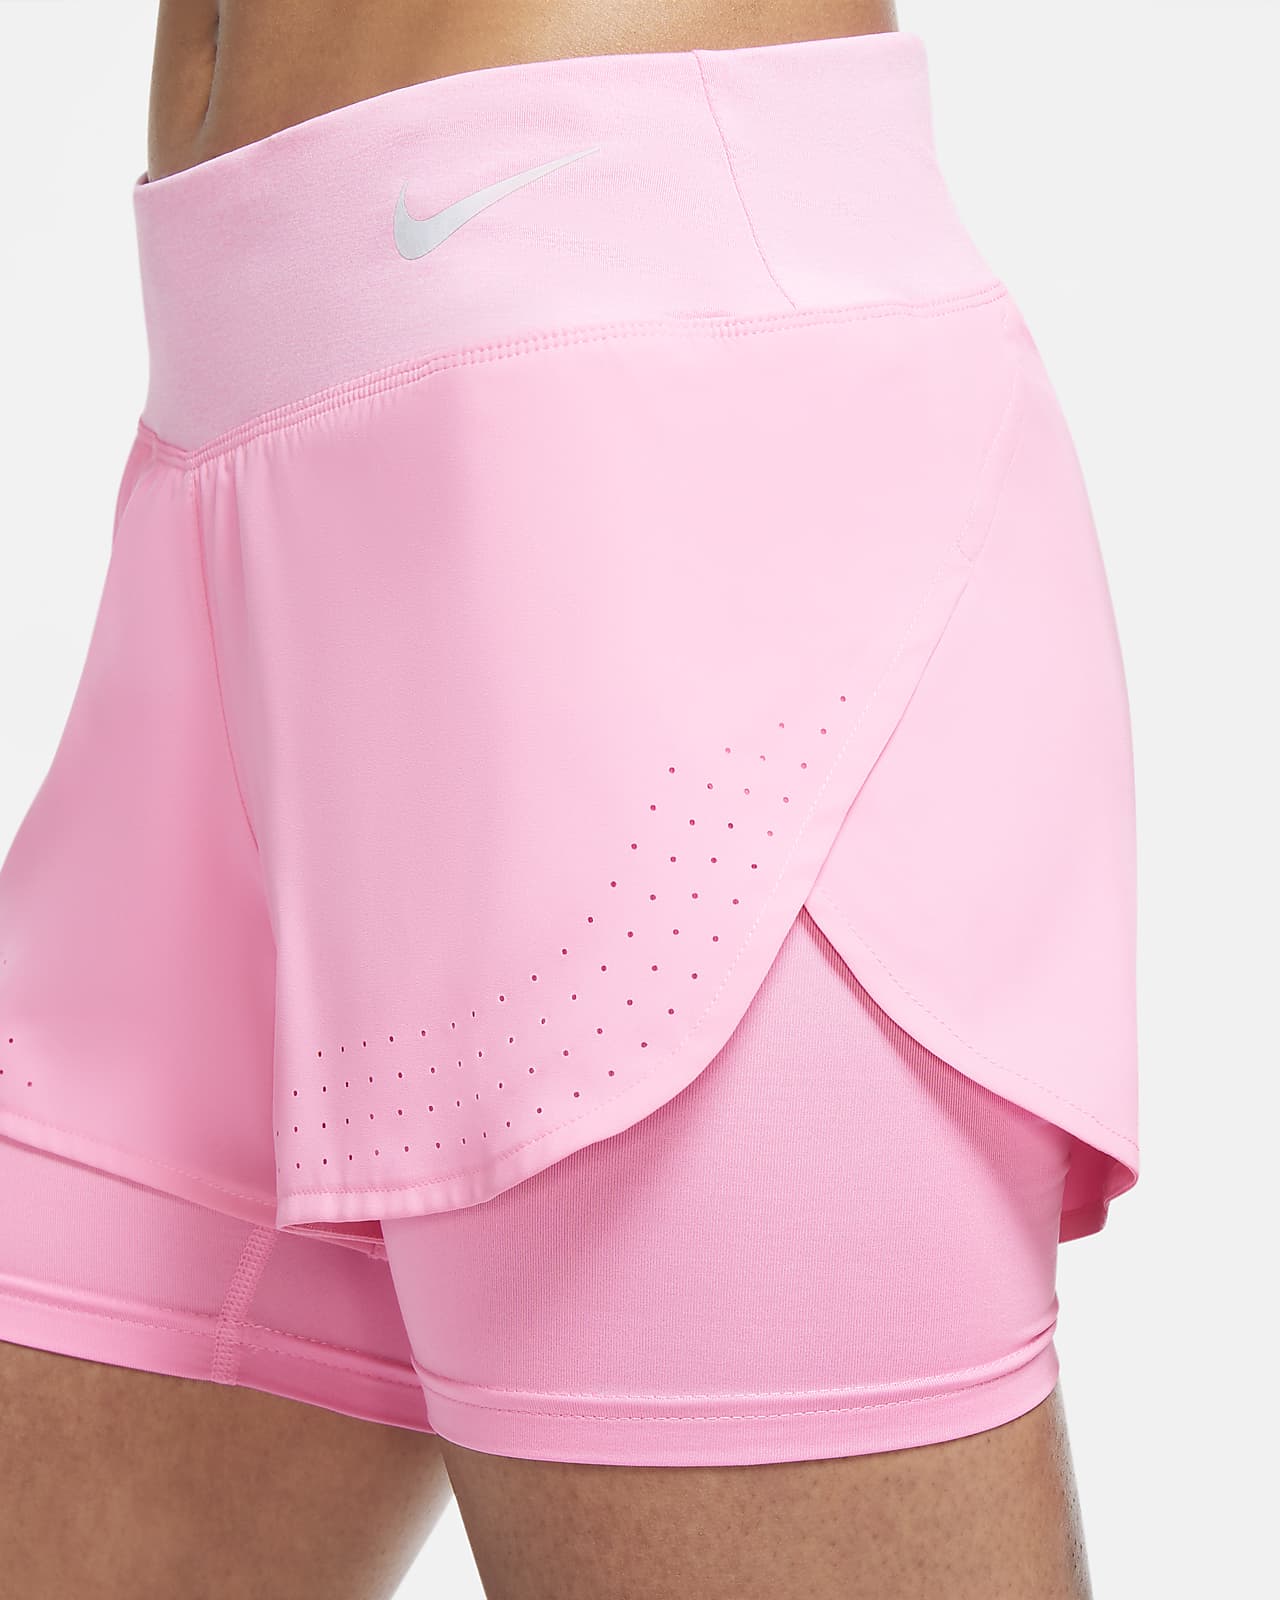 1 Running Shorts. Nike 